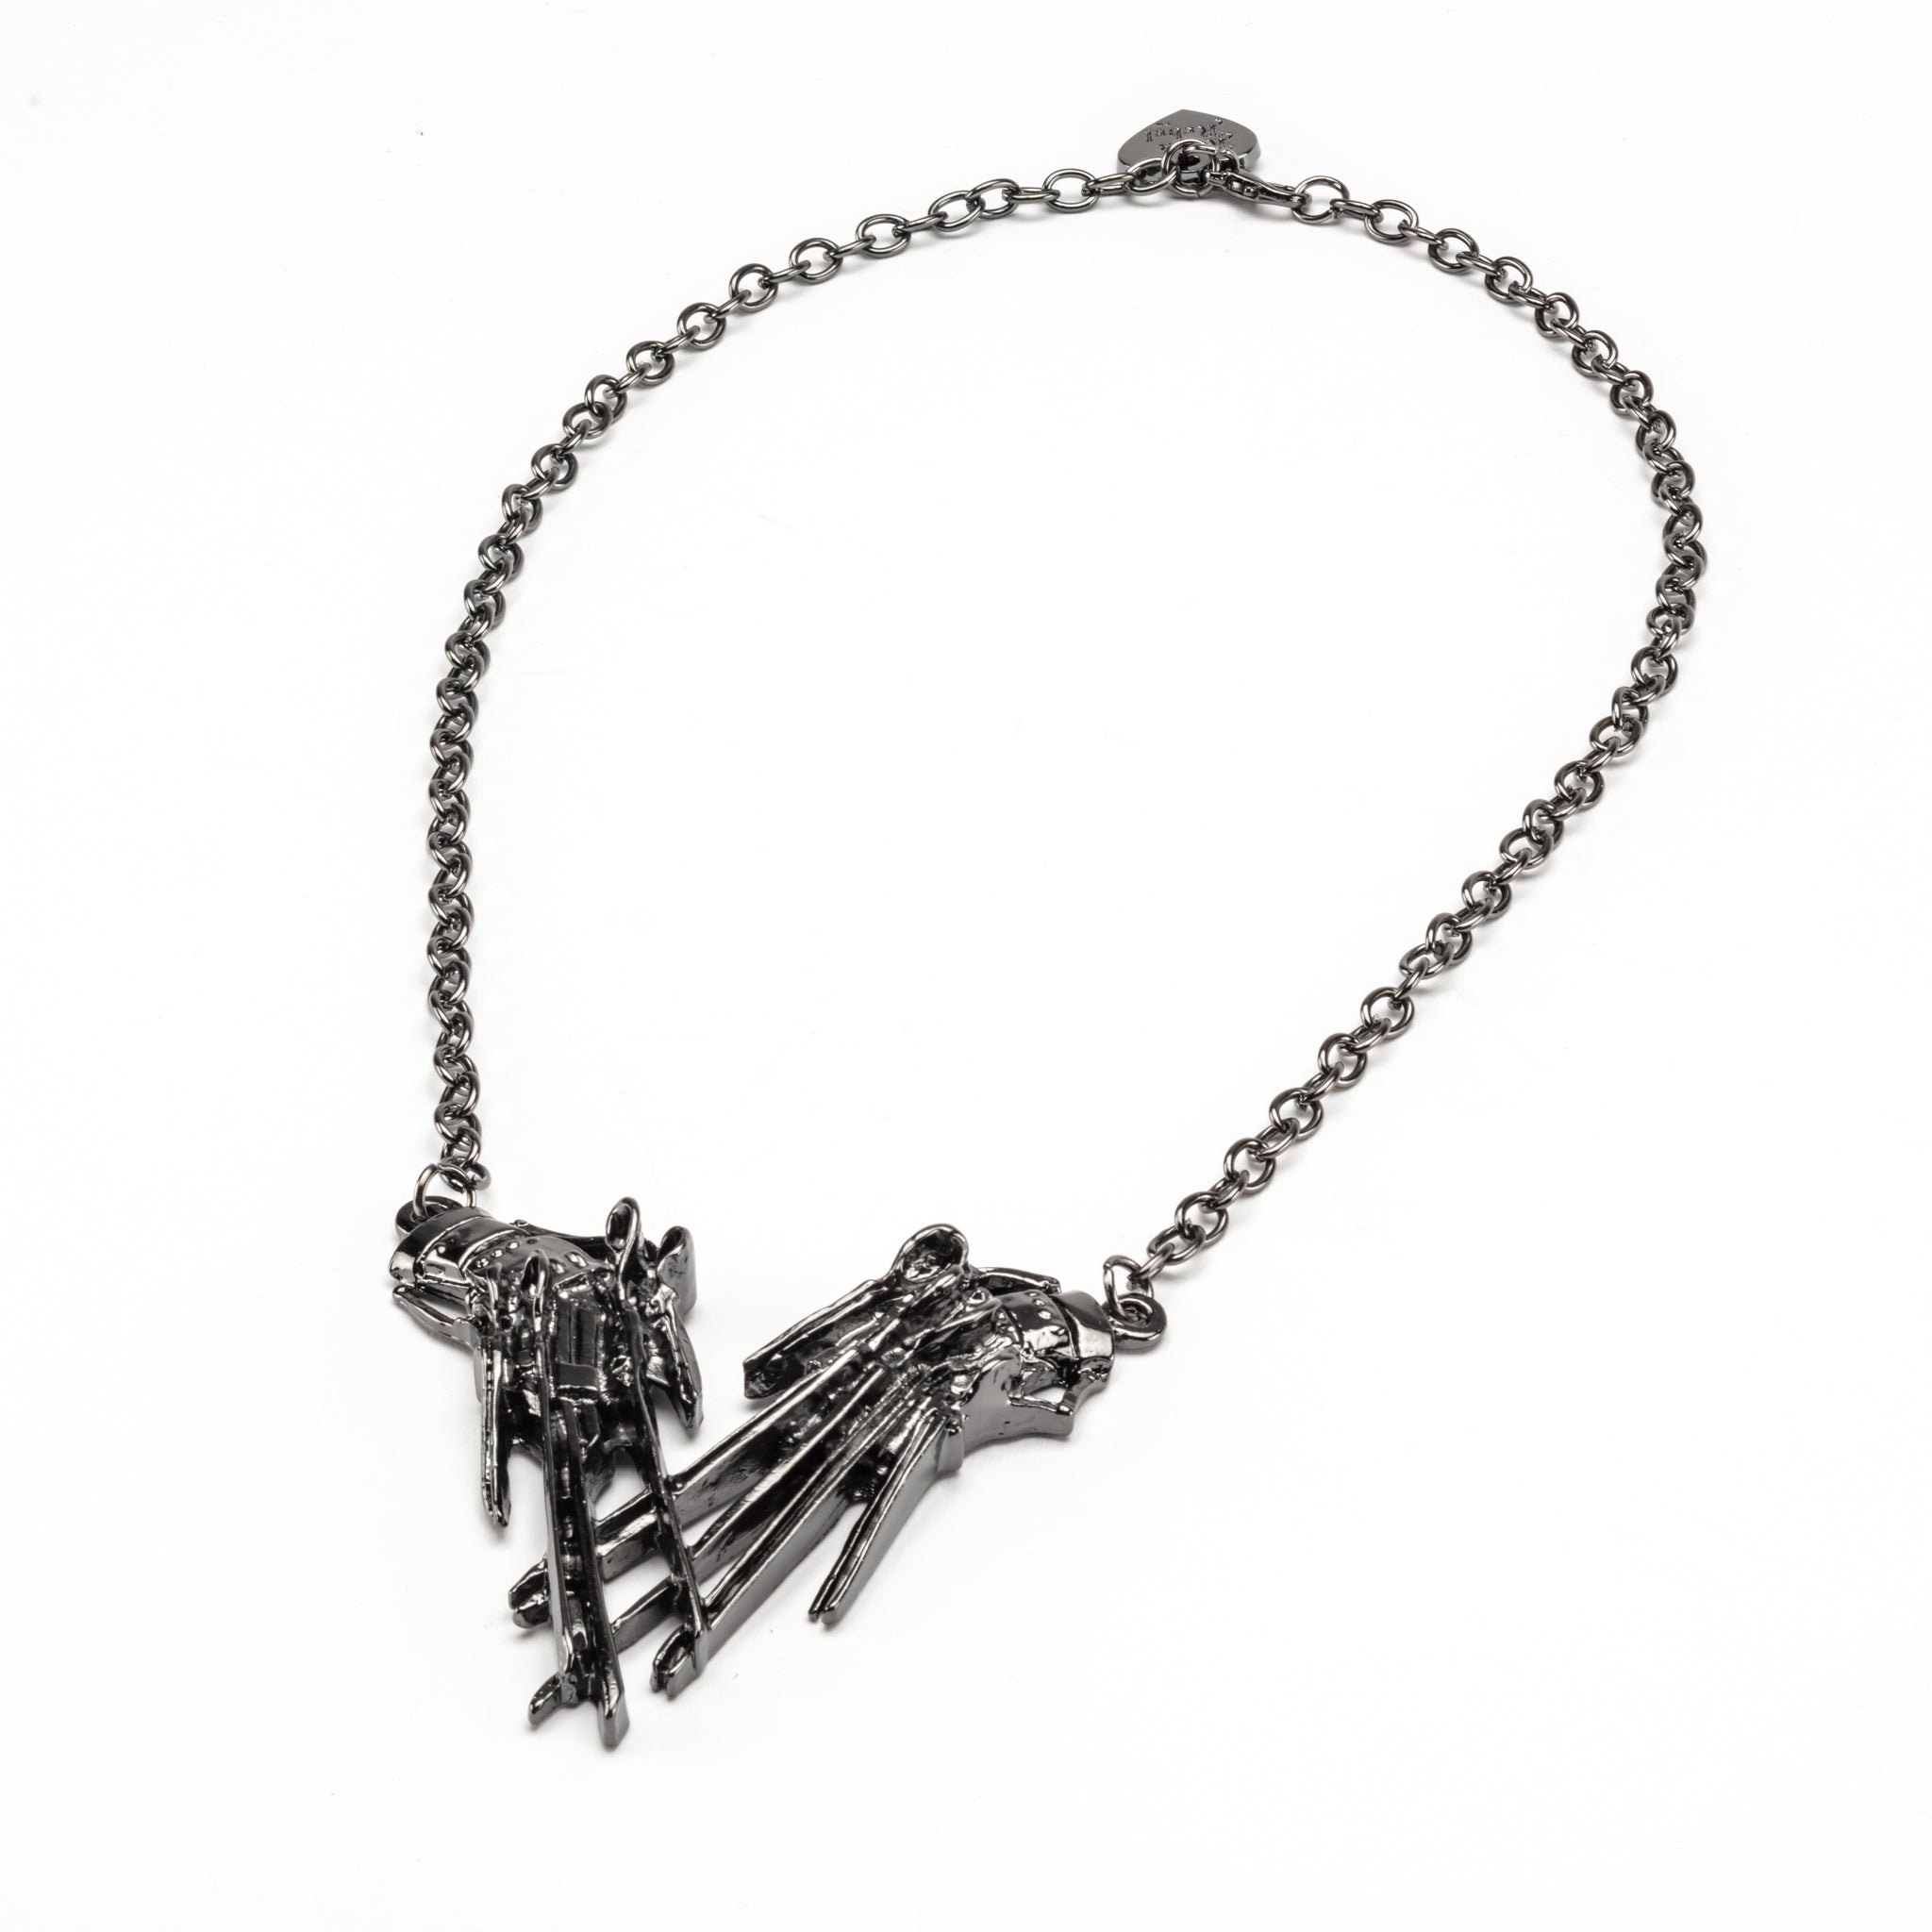 Edward Scissorhands Pendant Necklace